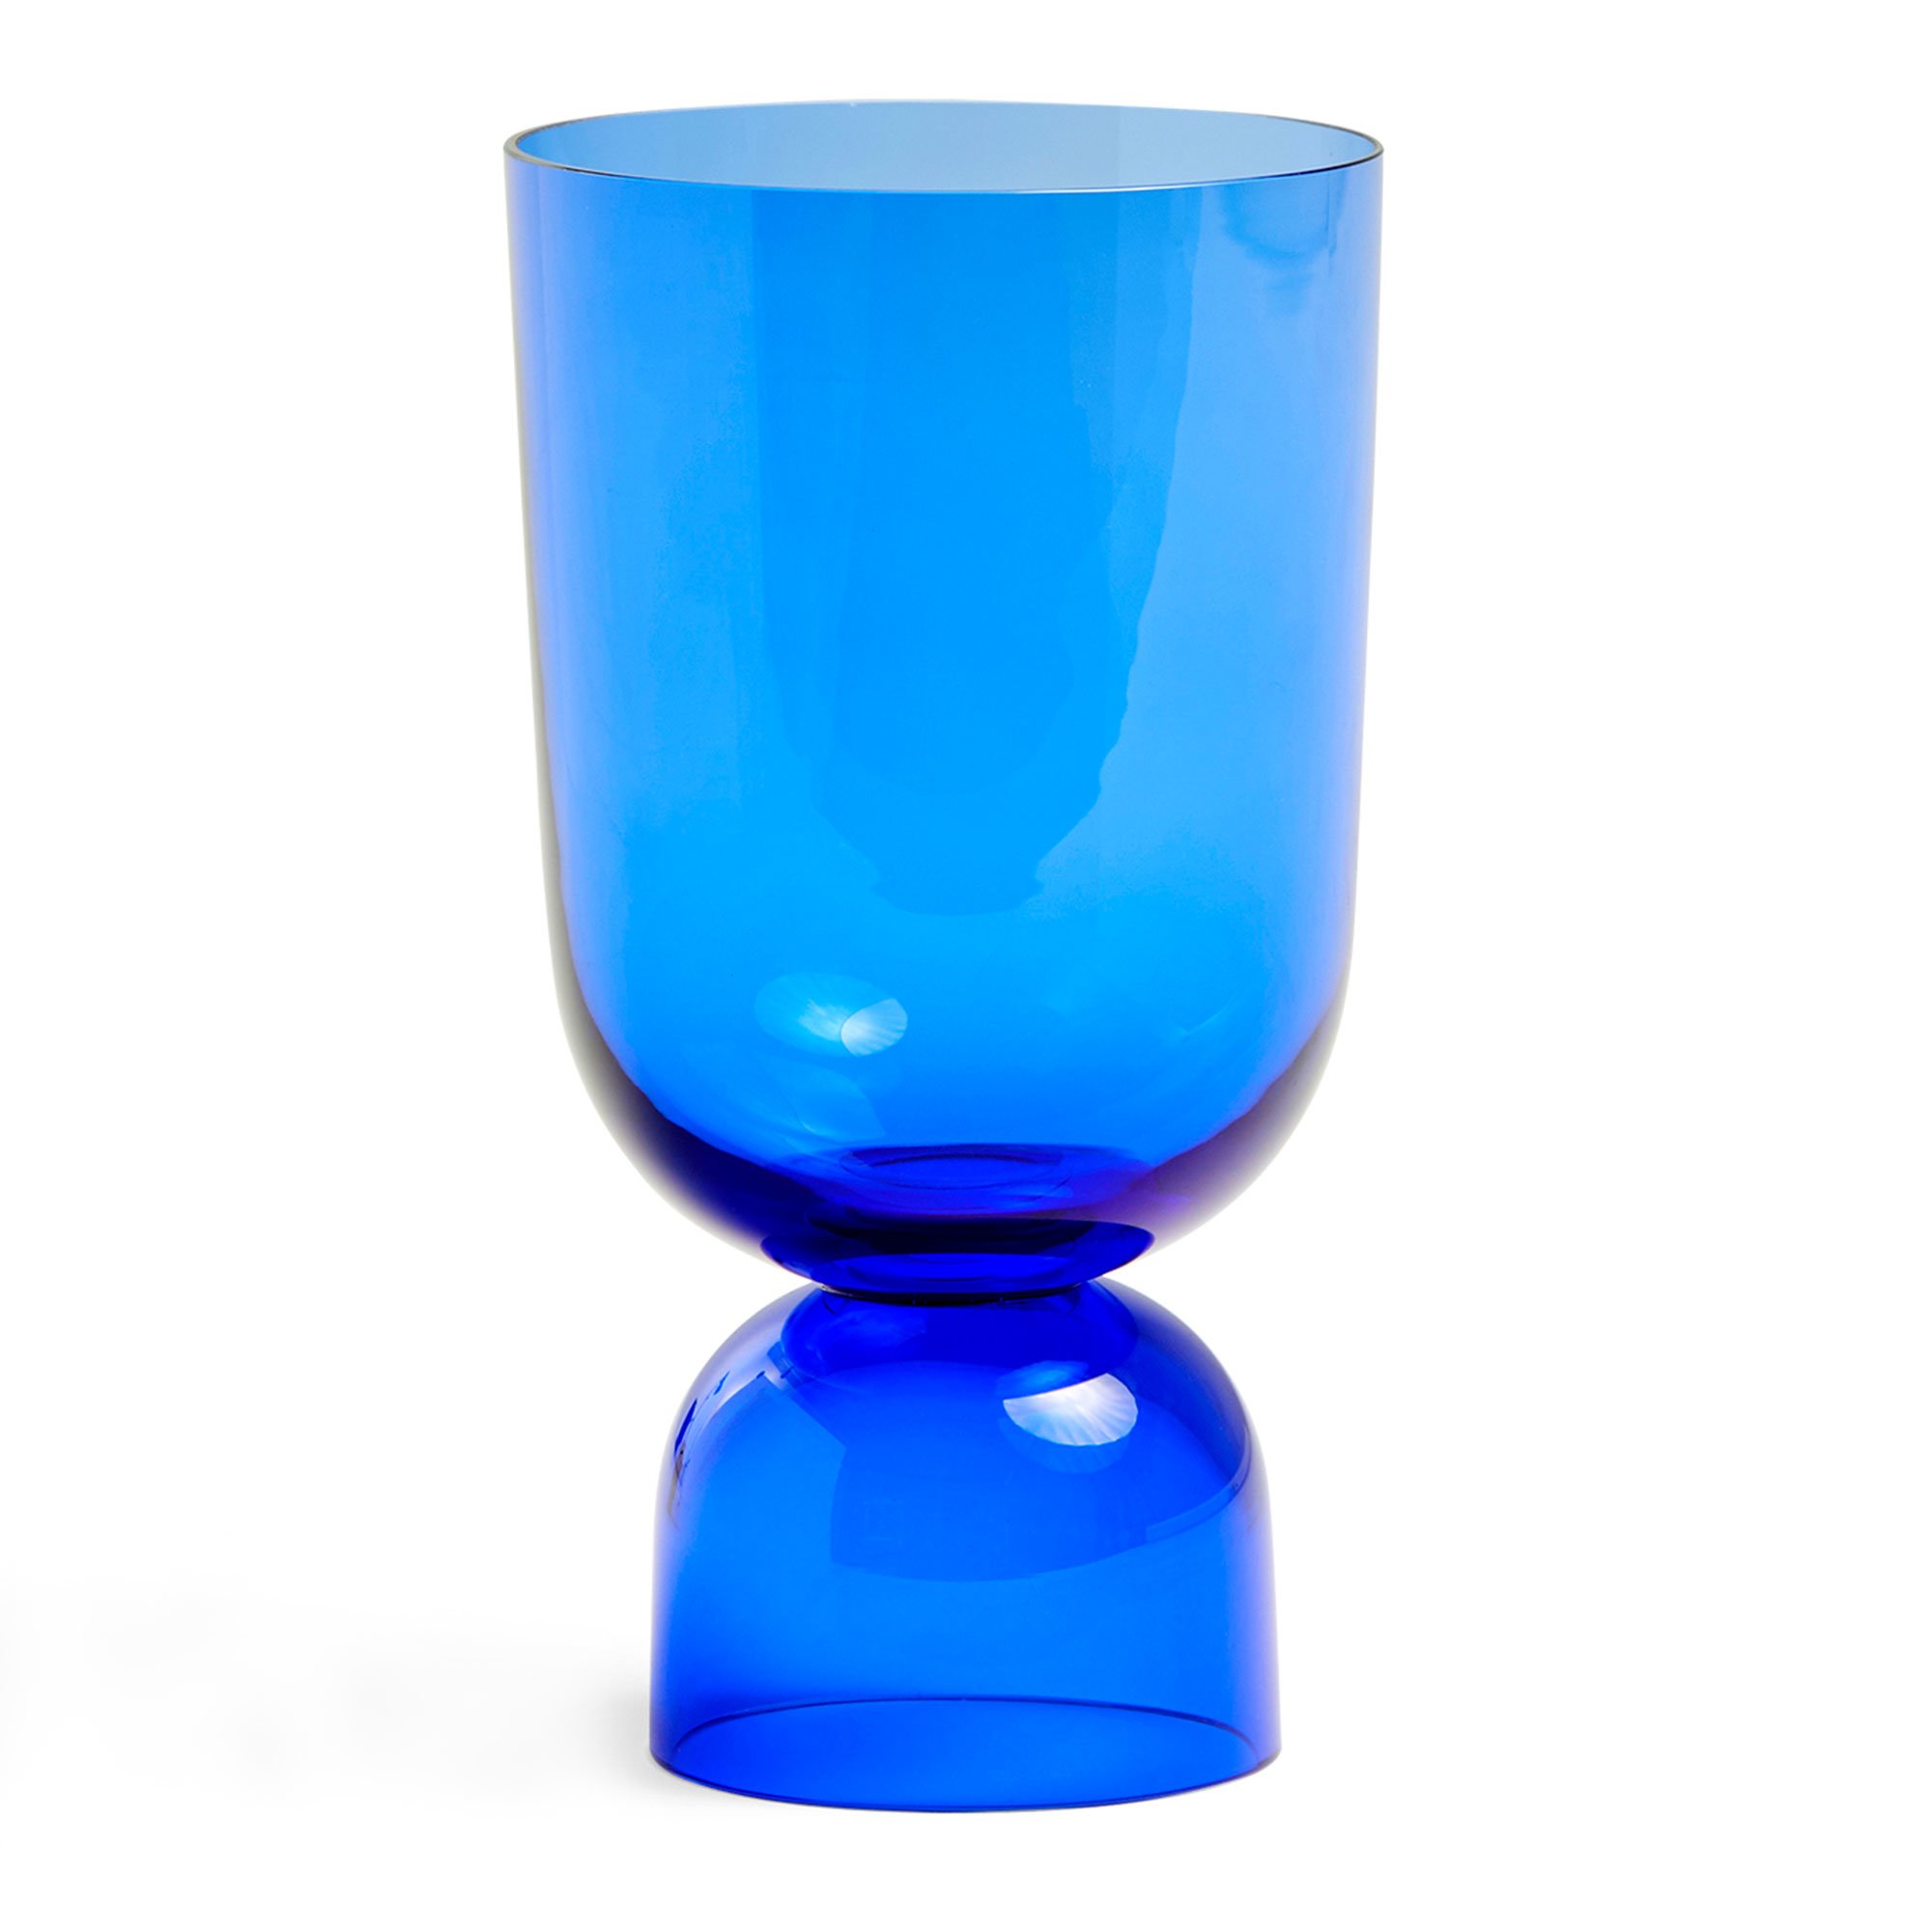 Läs mer om HAY Bottoms Up vas, electric blue